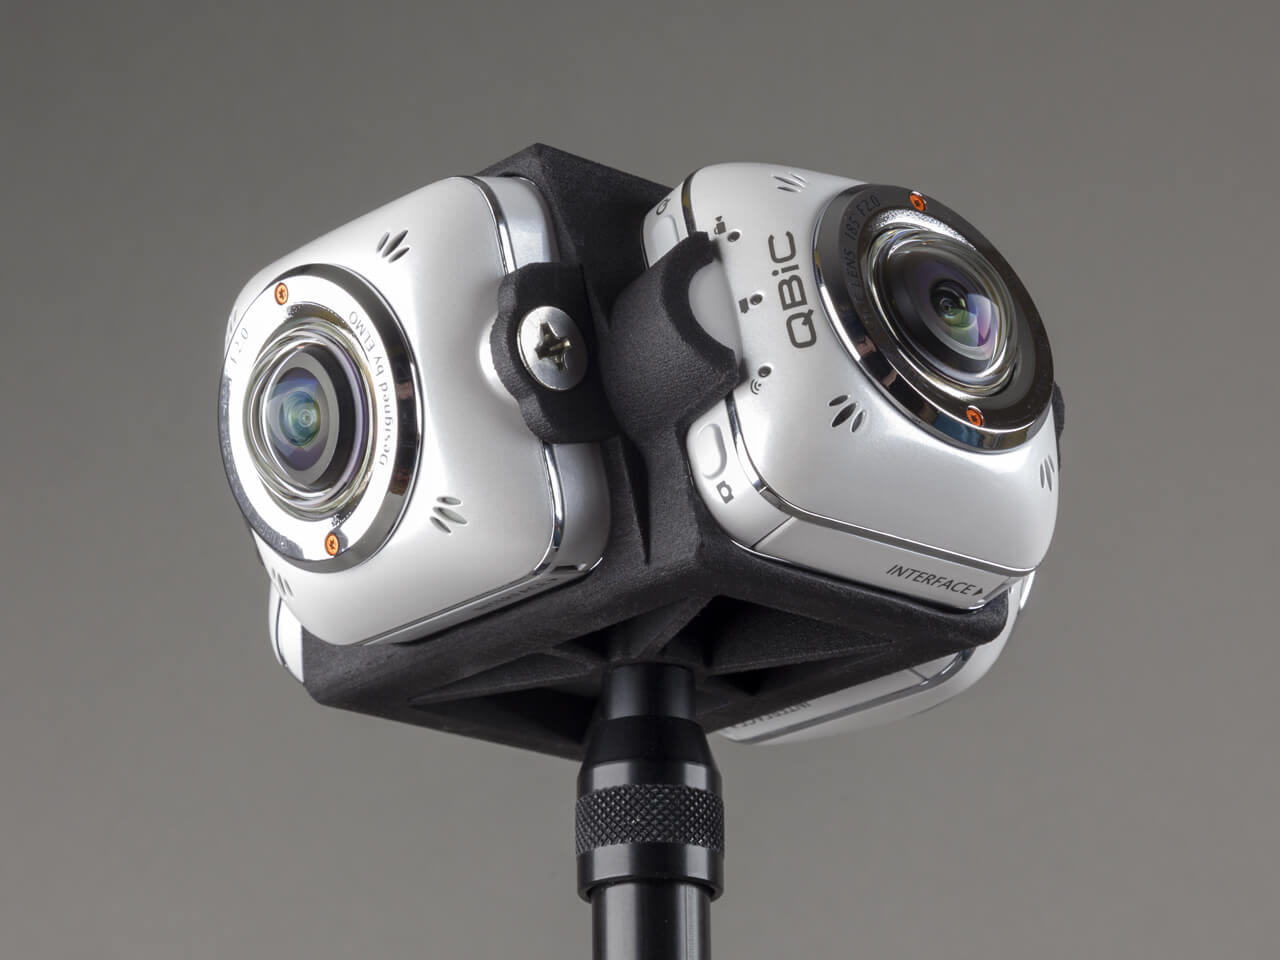 360 camera rigs - Elmo360